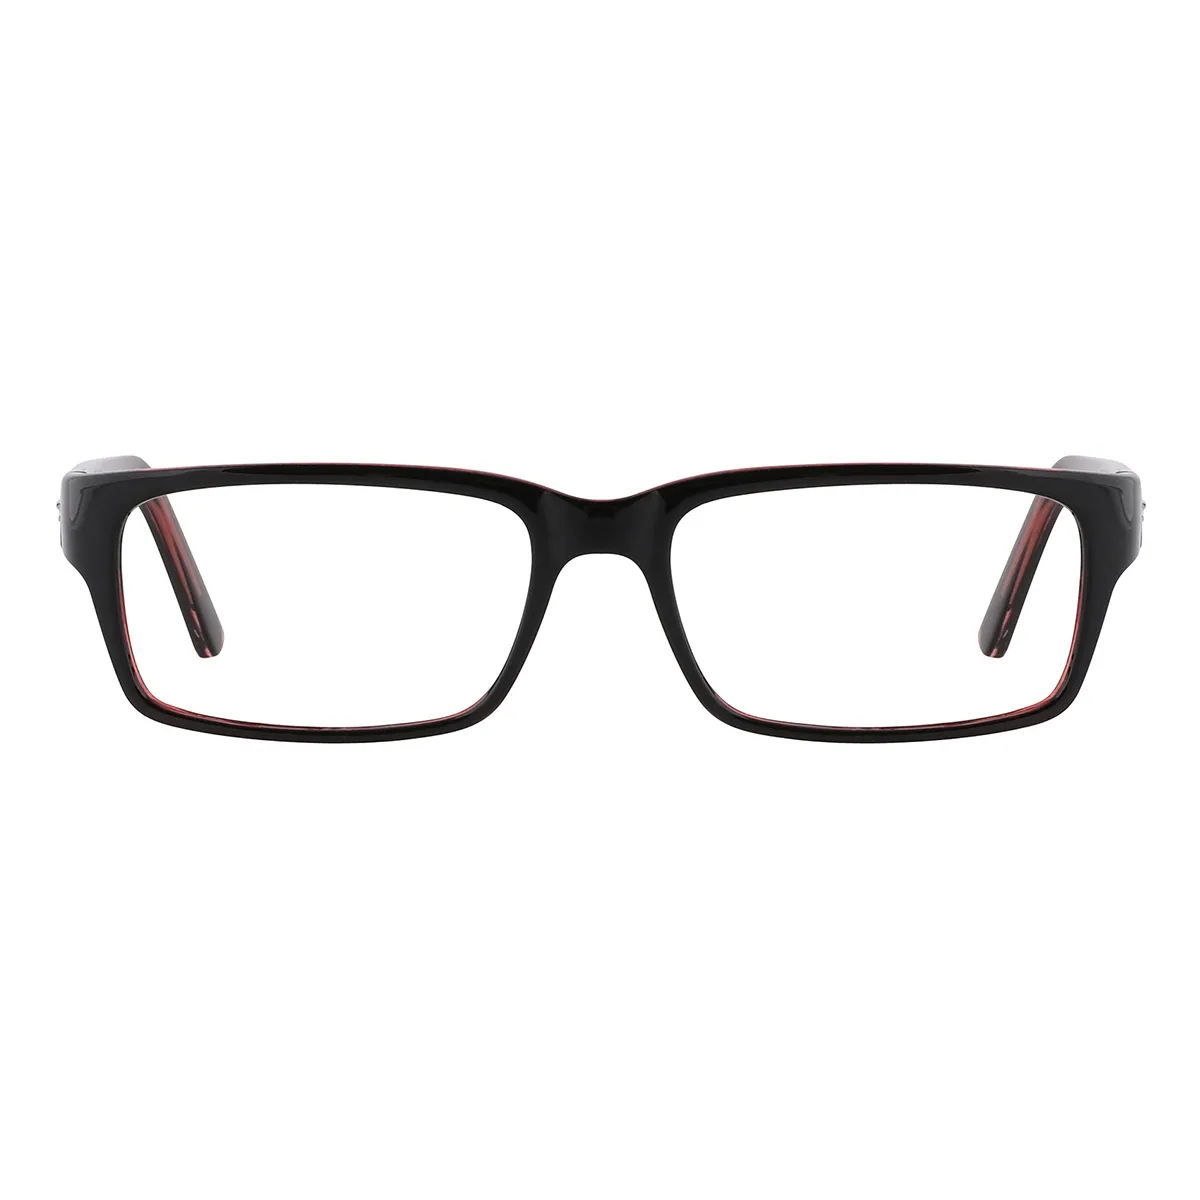 Classic Rectangle Black-Red  Reading Glasses for Women & Men